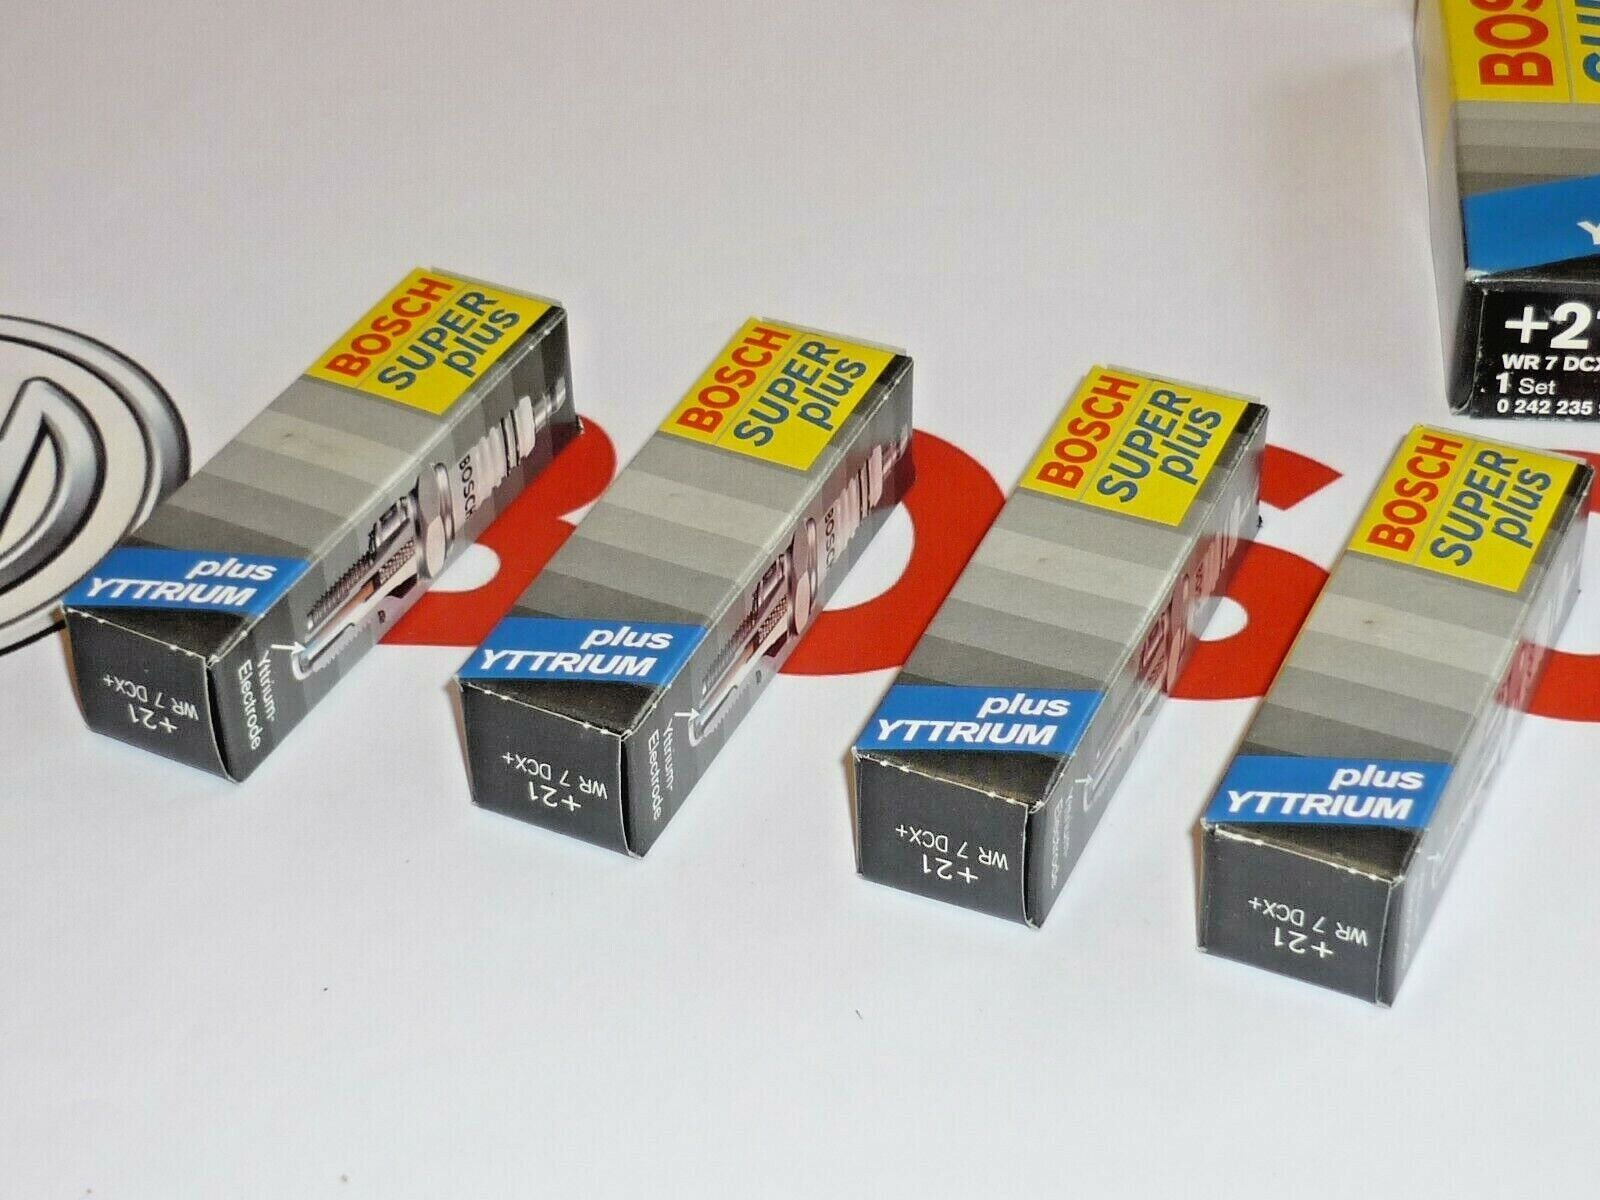 Set of 4 original BOSCH FR8DCX 19 SUPER plus YTTRIUM spark plugs NEW in BOX